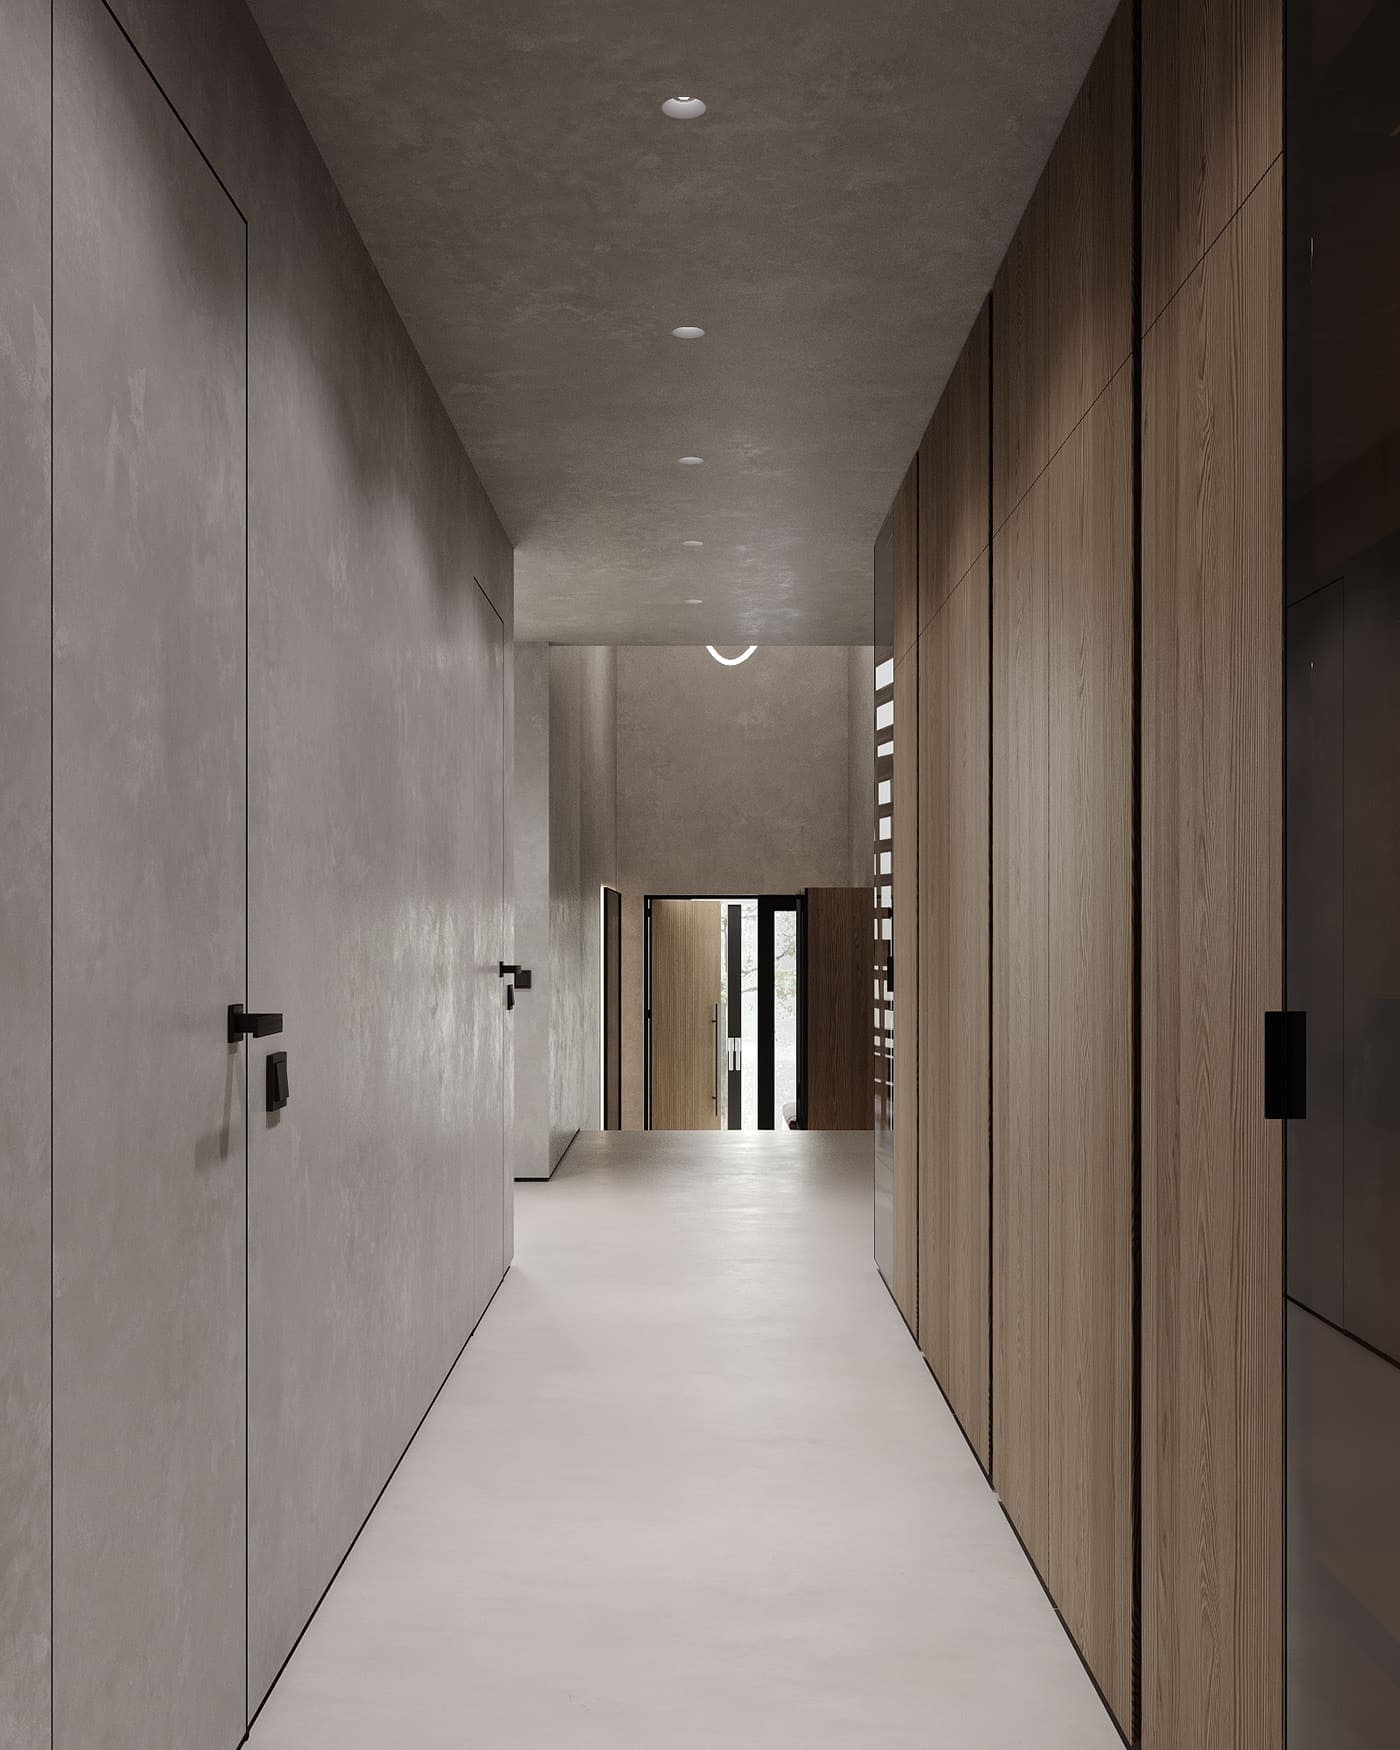 Простора дворівнева квартира для пари з вабі-сабі елементами, коридор, фото 51